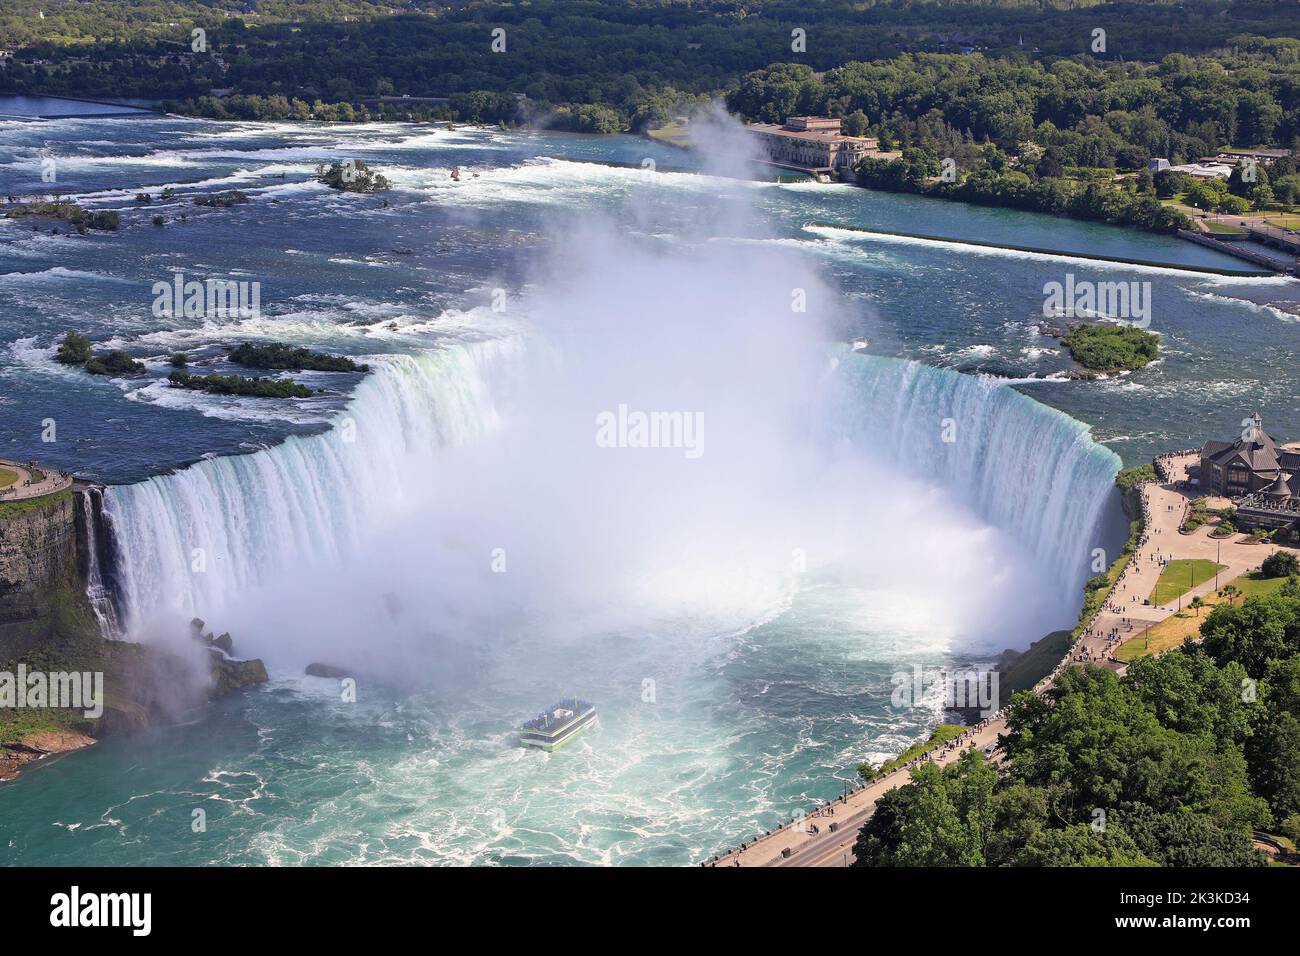 Vista aerea delle cascate Horseshoe, inclusa la barca Maid of the Mist che naviga sul fiume Niagara, al confine naturale tra Canada e Stati Uniti Foto Stock